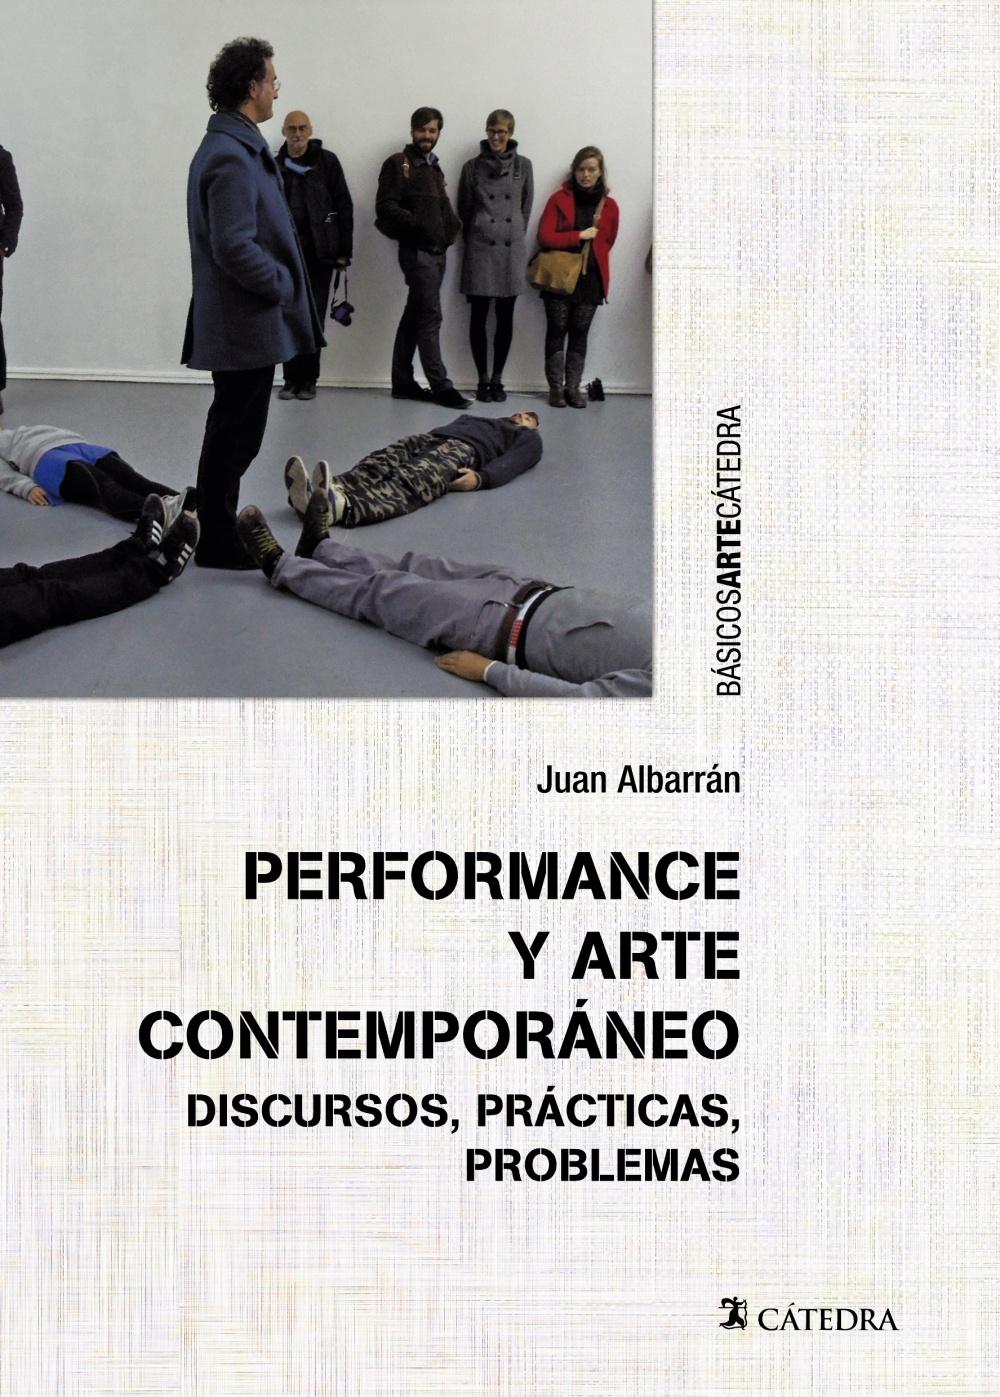 Performance y arte contemporáneo "Discursos, prácticas y problemas"